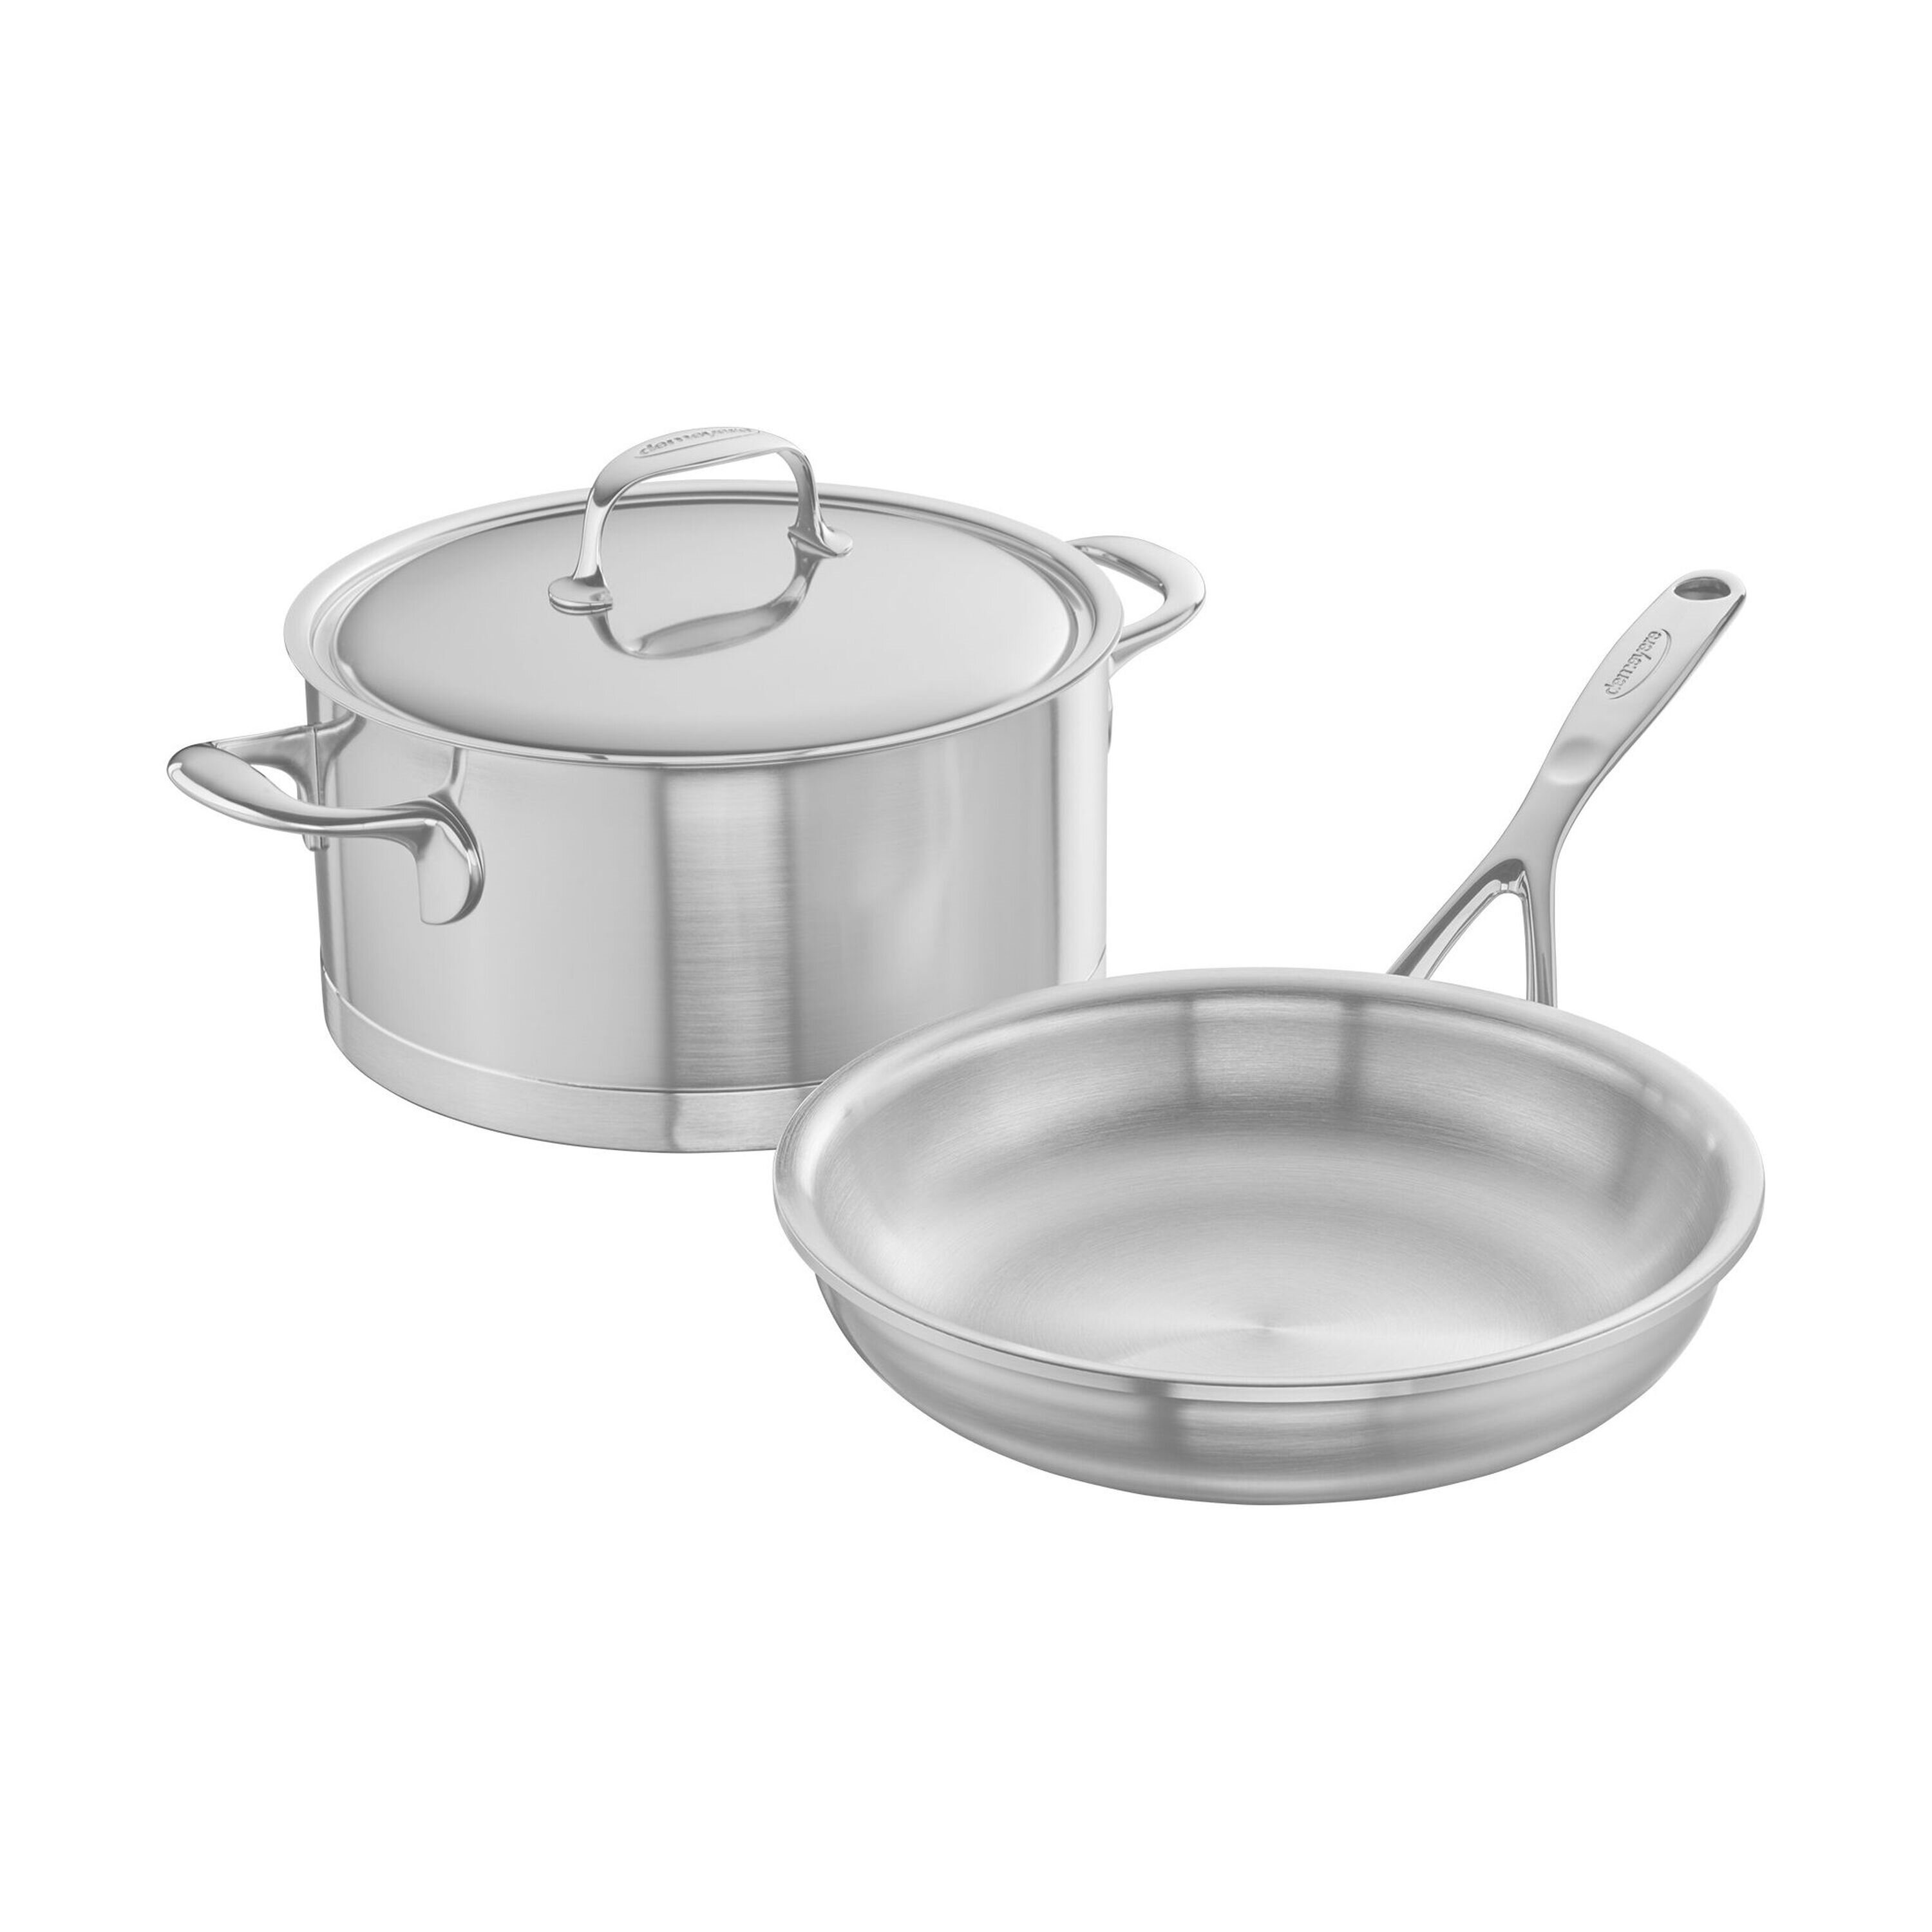 https://assets.wfcdn.com/im/42009483/compr-r85/1683/168385893/demeyere-atlantis-3-piece-stainless-steel-cookware-set.jpg